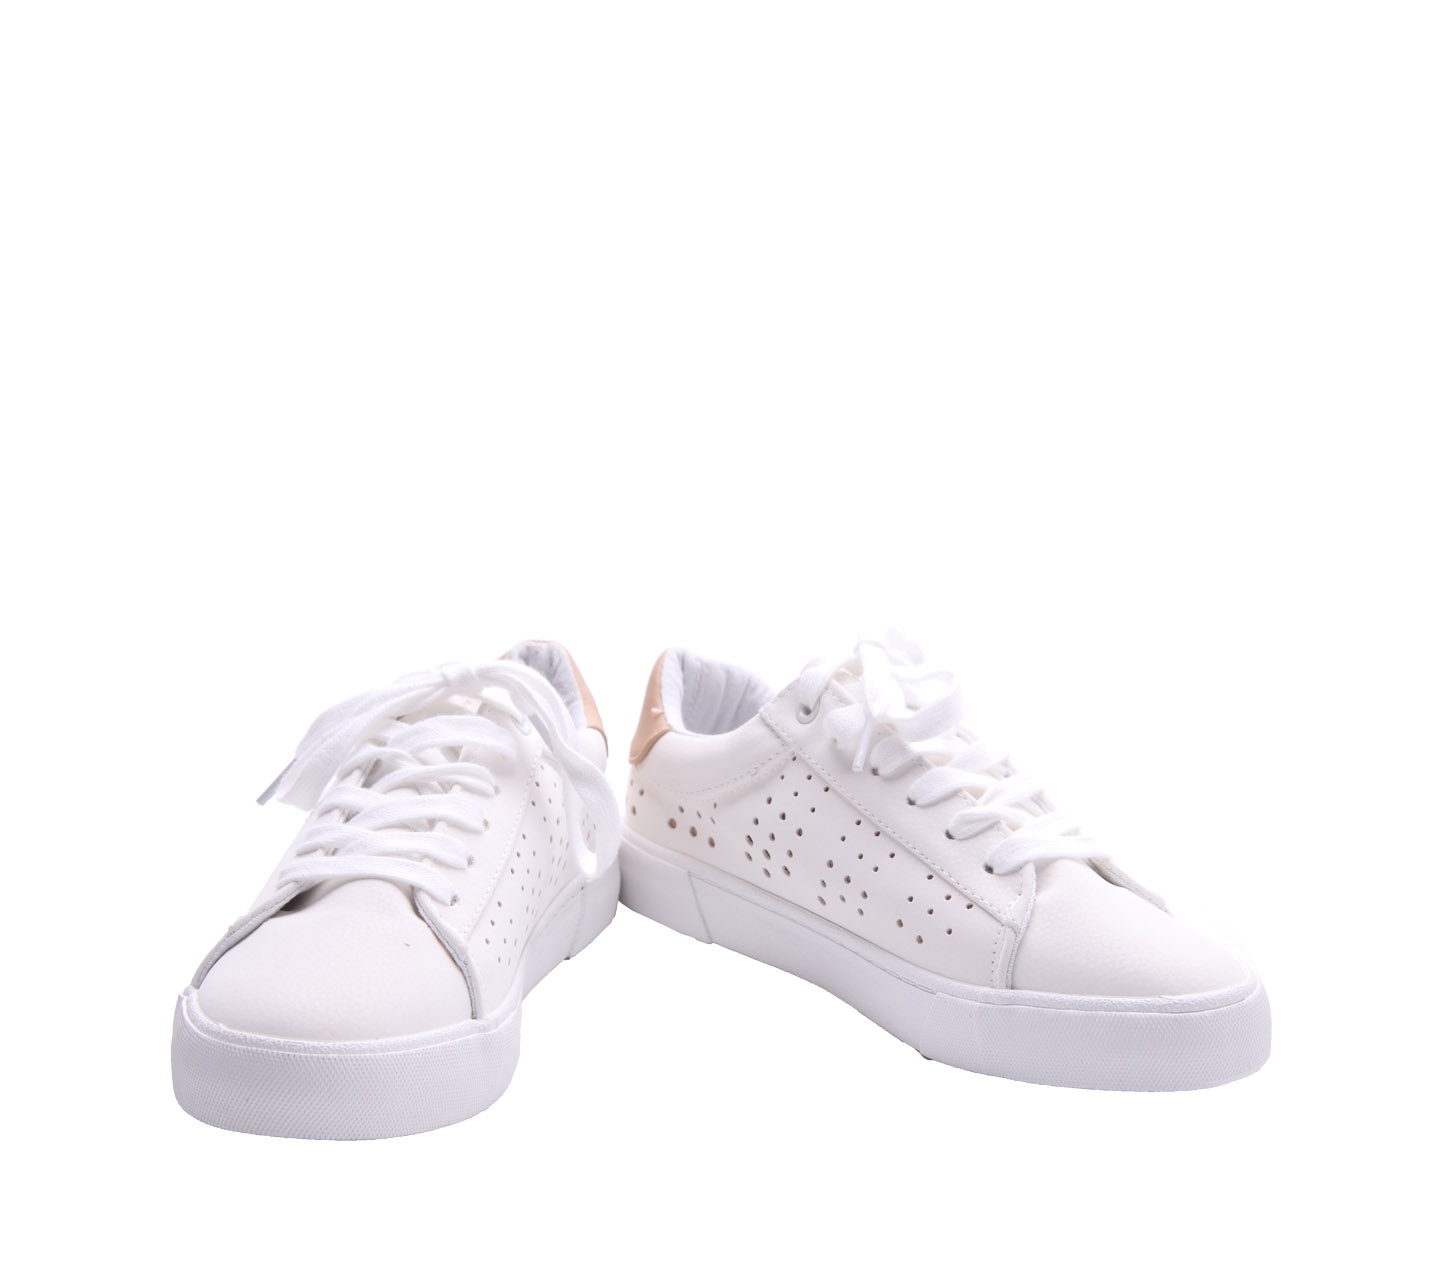 Airwalk White Sneakers